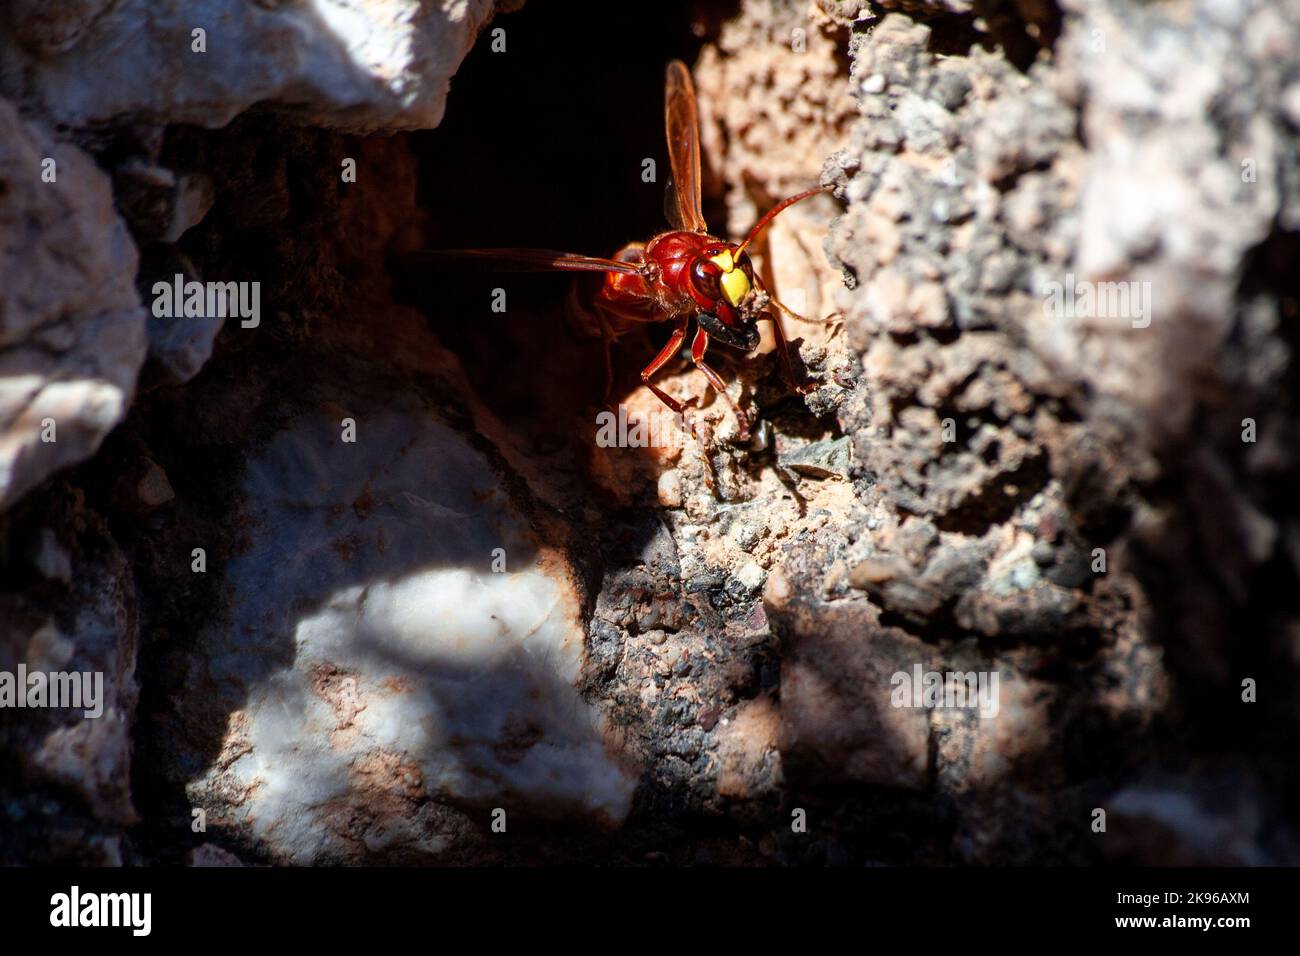 Gros plan frontal d'un hornet européen de construction de leur nid. Vespa crabro gros plan. Photo macro avec mise au point sélective. Hornet approfondit le nid Banque D'Images